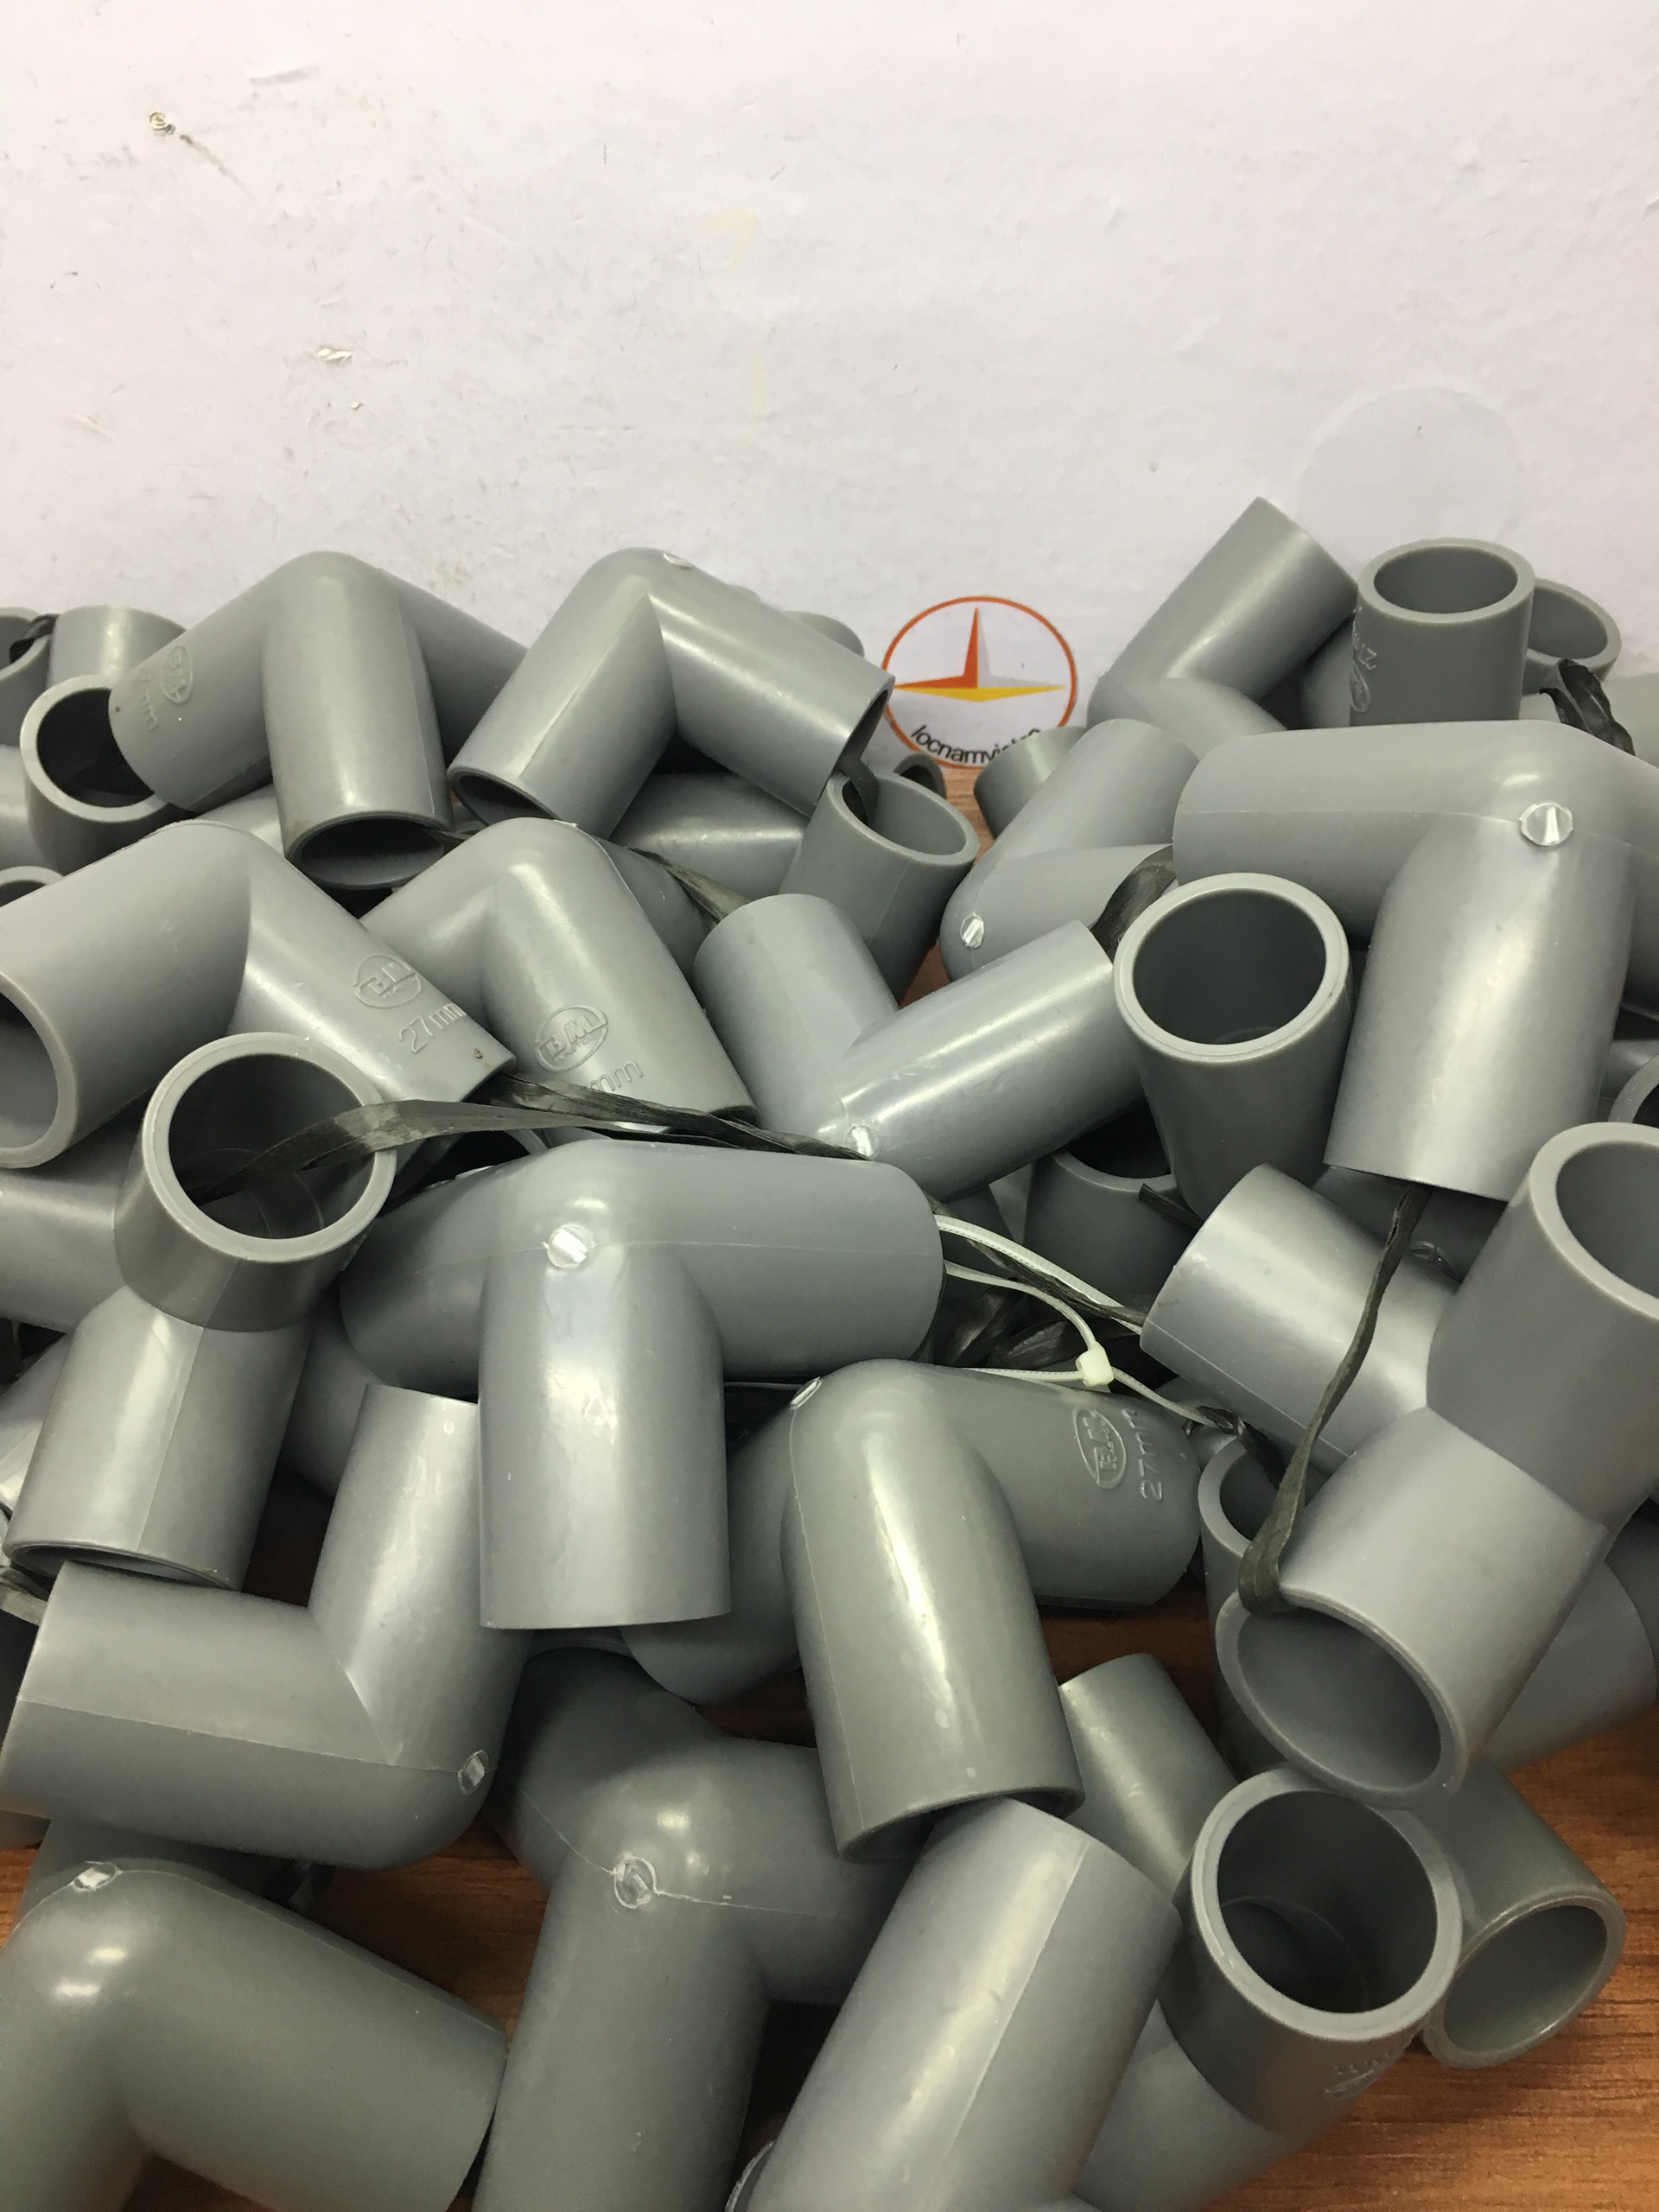 Co góc 3 hướng 27 nhựa PVC Bình Minh ( 5 cái )